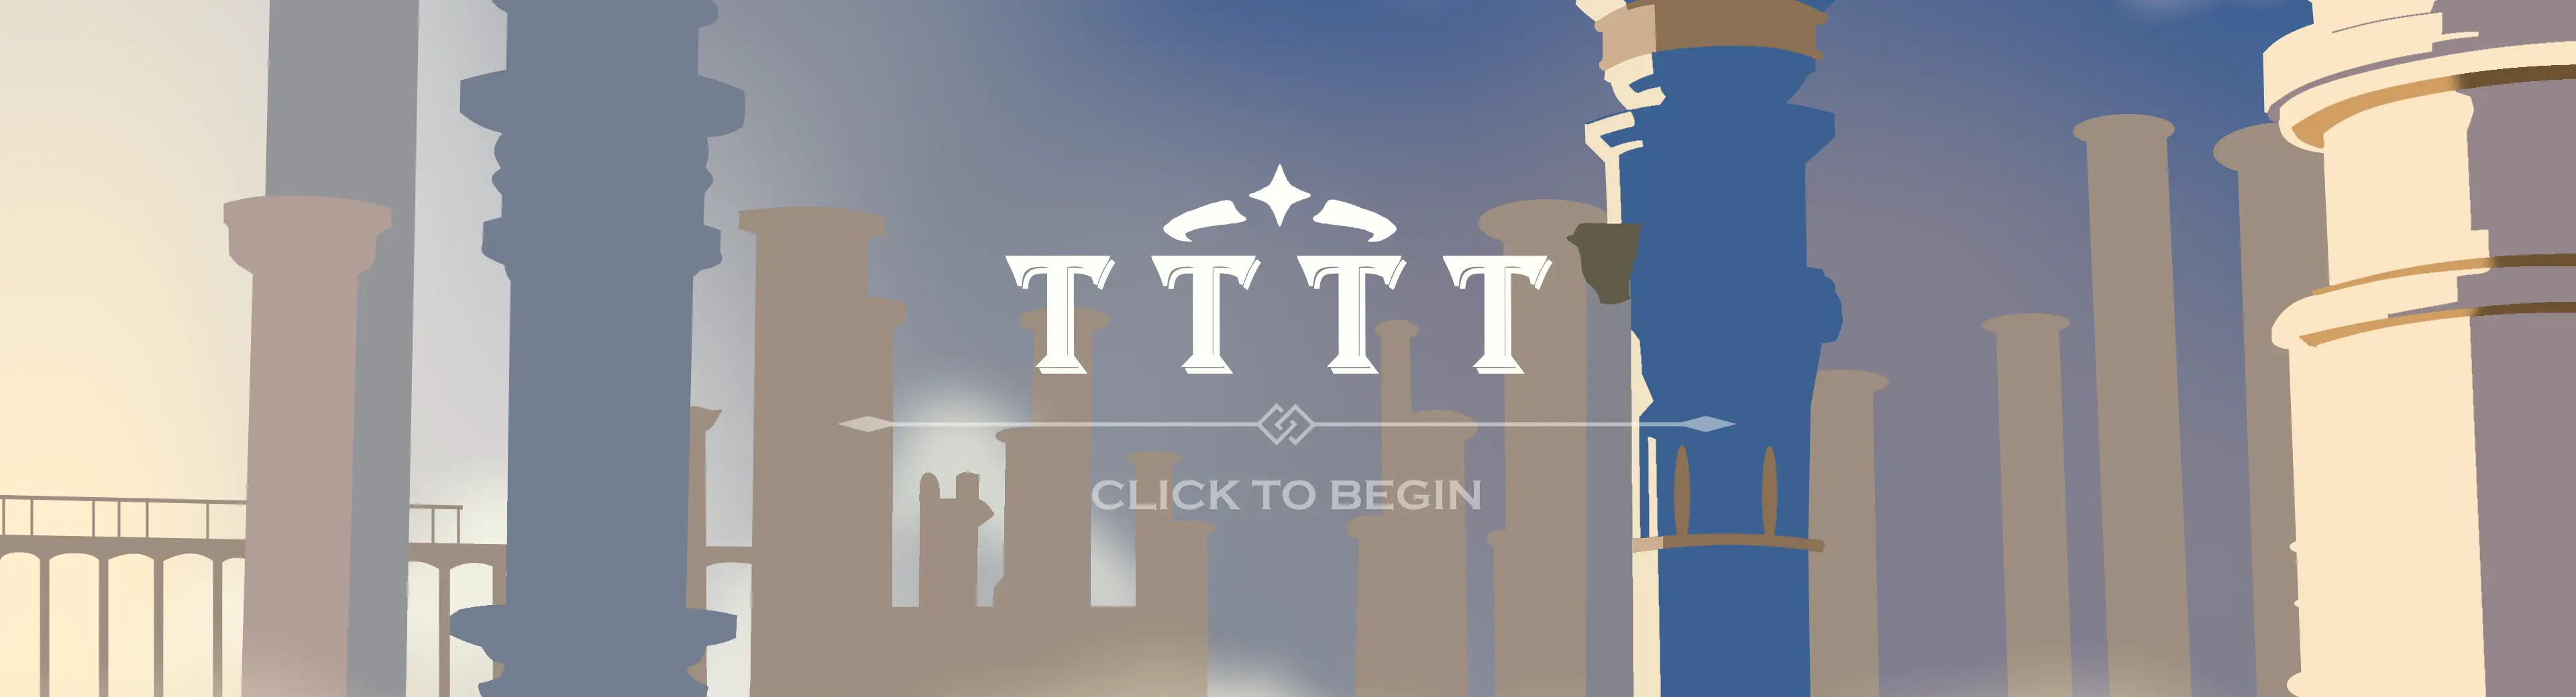 TTTT - Traveler's Tasty TCG Tournament main image